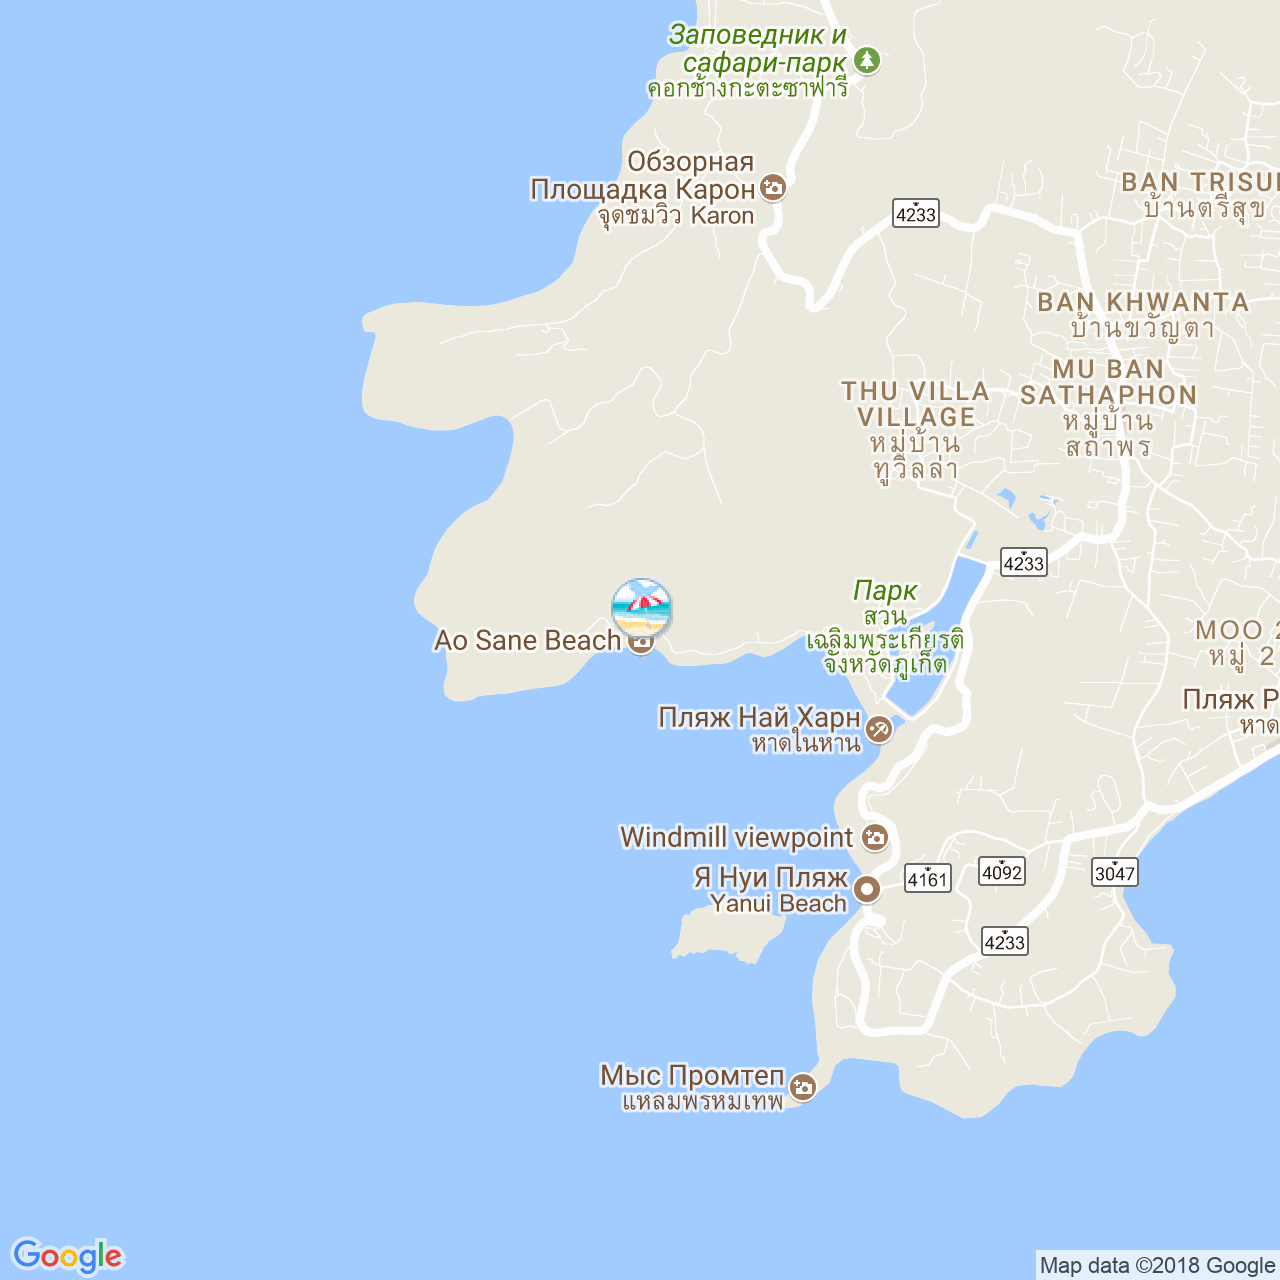 Пляж Ао Сан на карте Пхукета